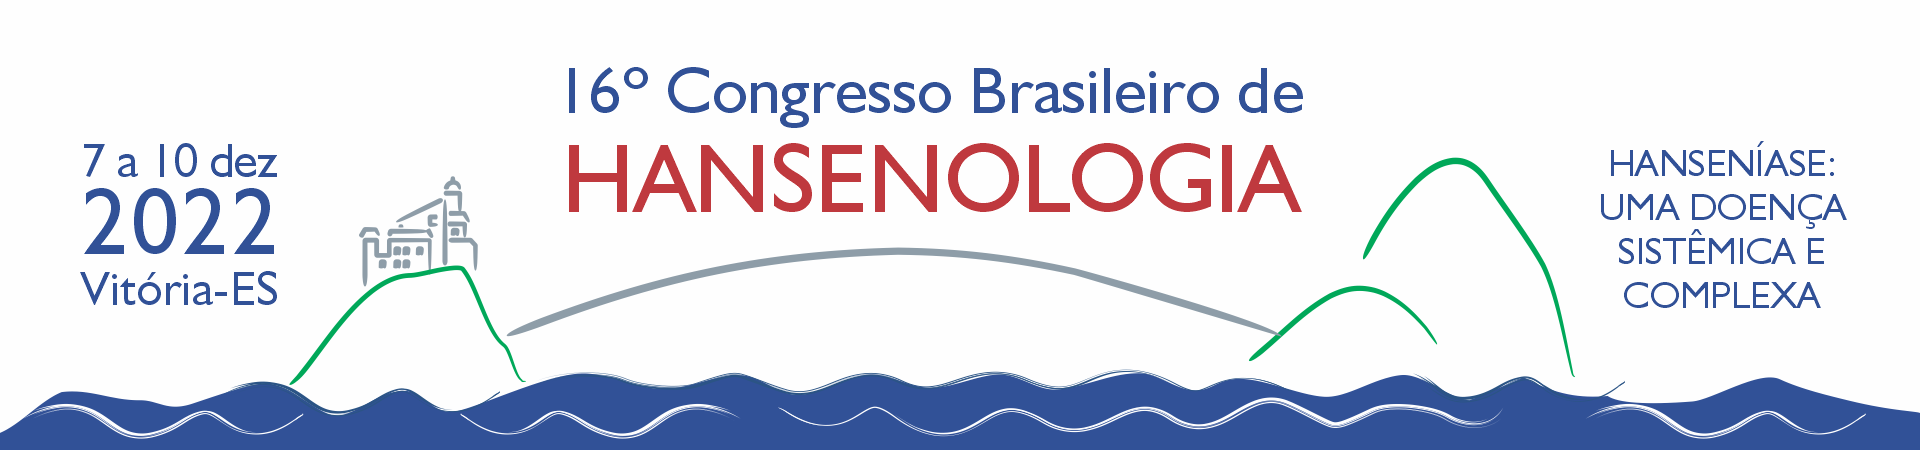 O que é o 16º Congresso Brasileiro de Hansenologia